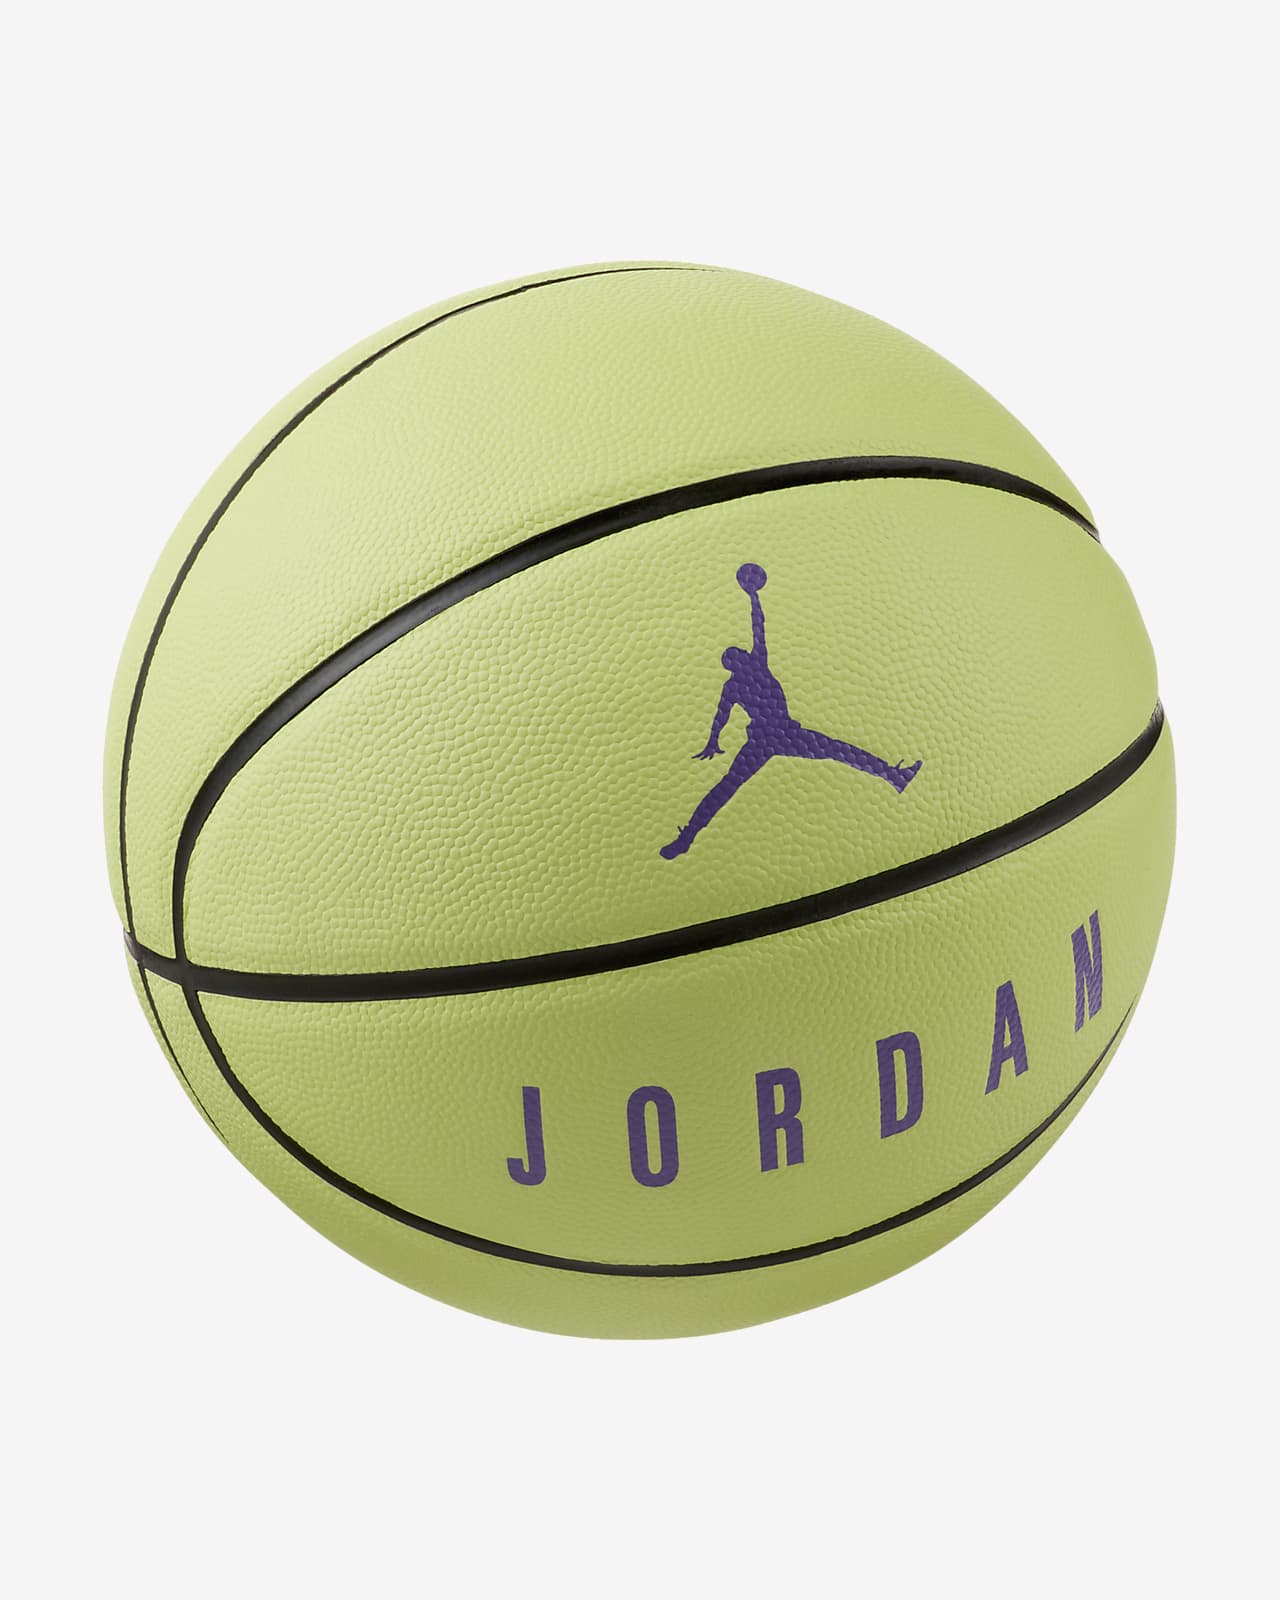 Jordan Ultimate 8P 篮球（7 号）